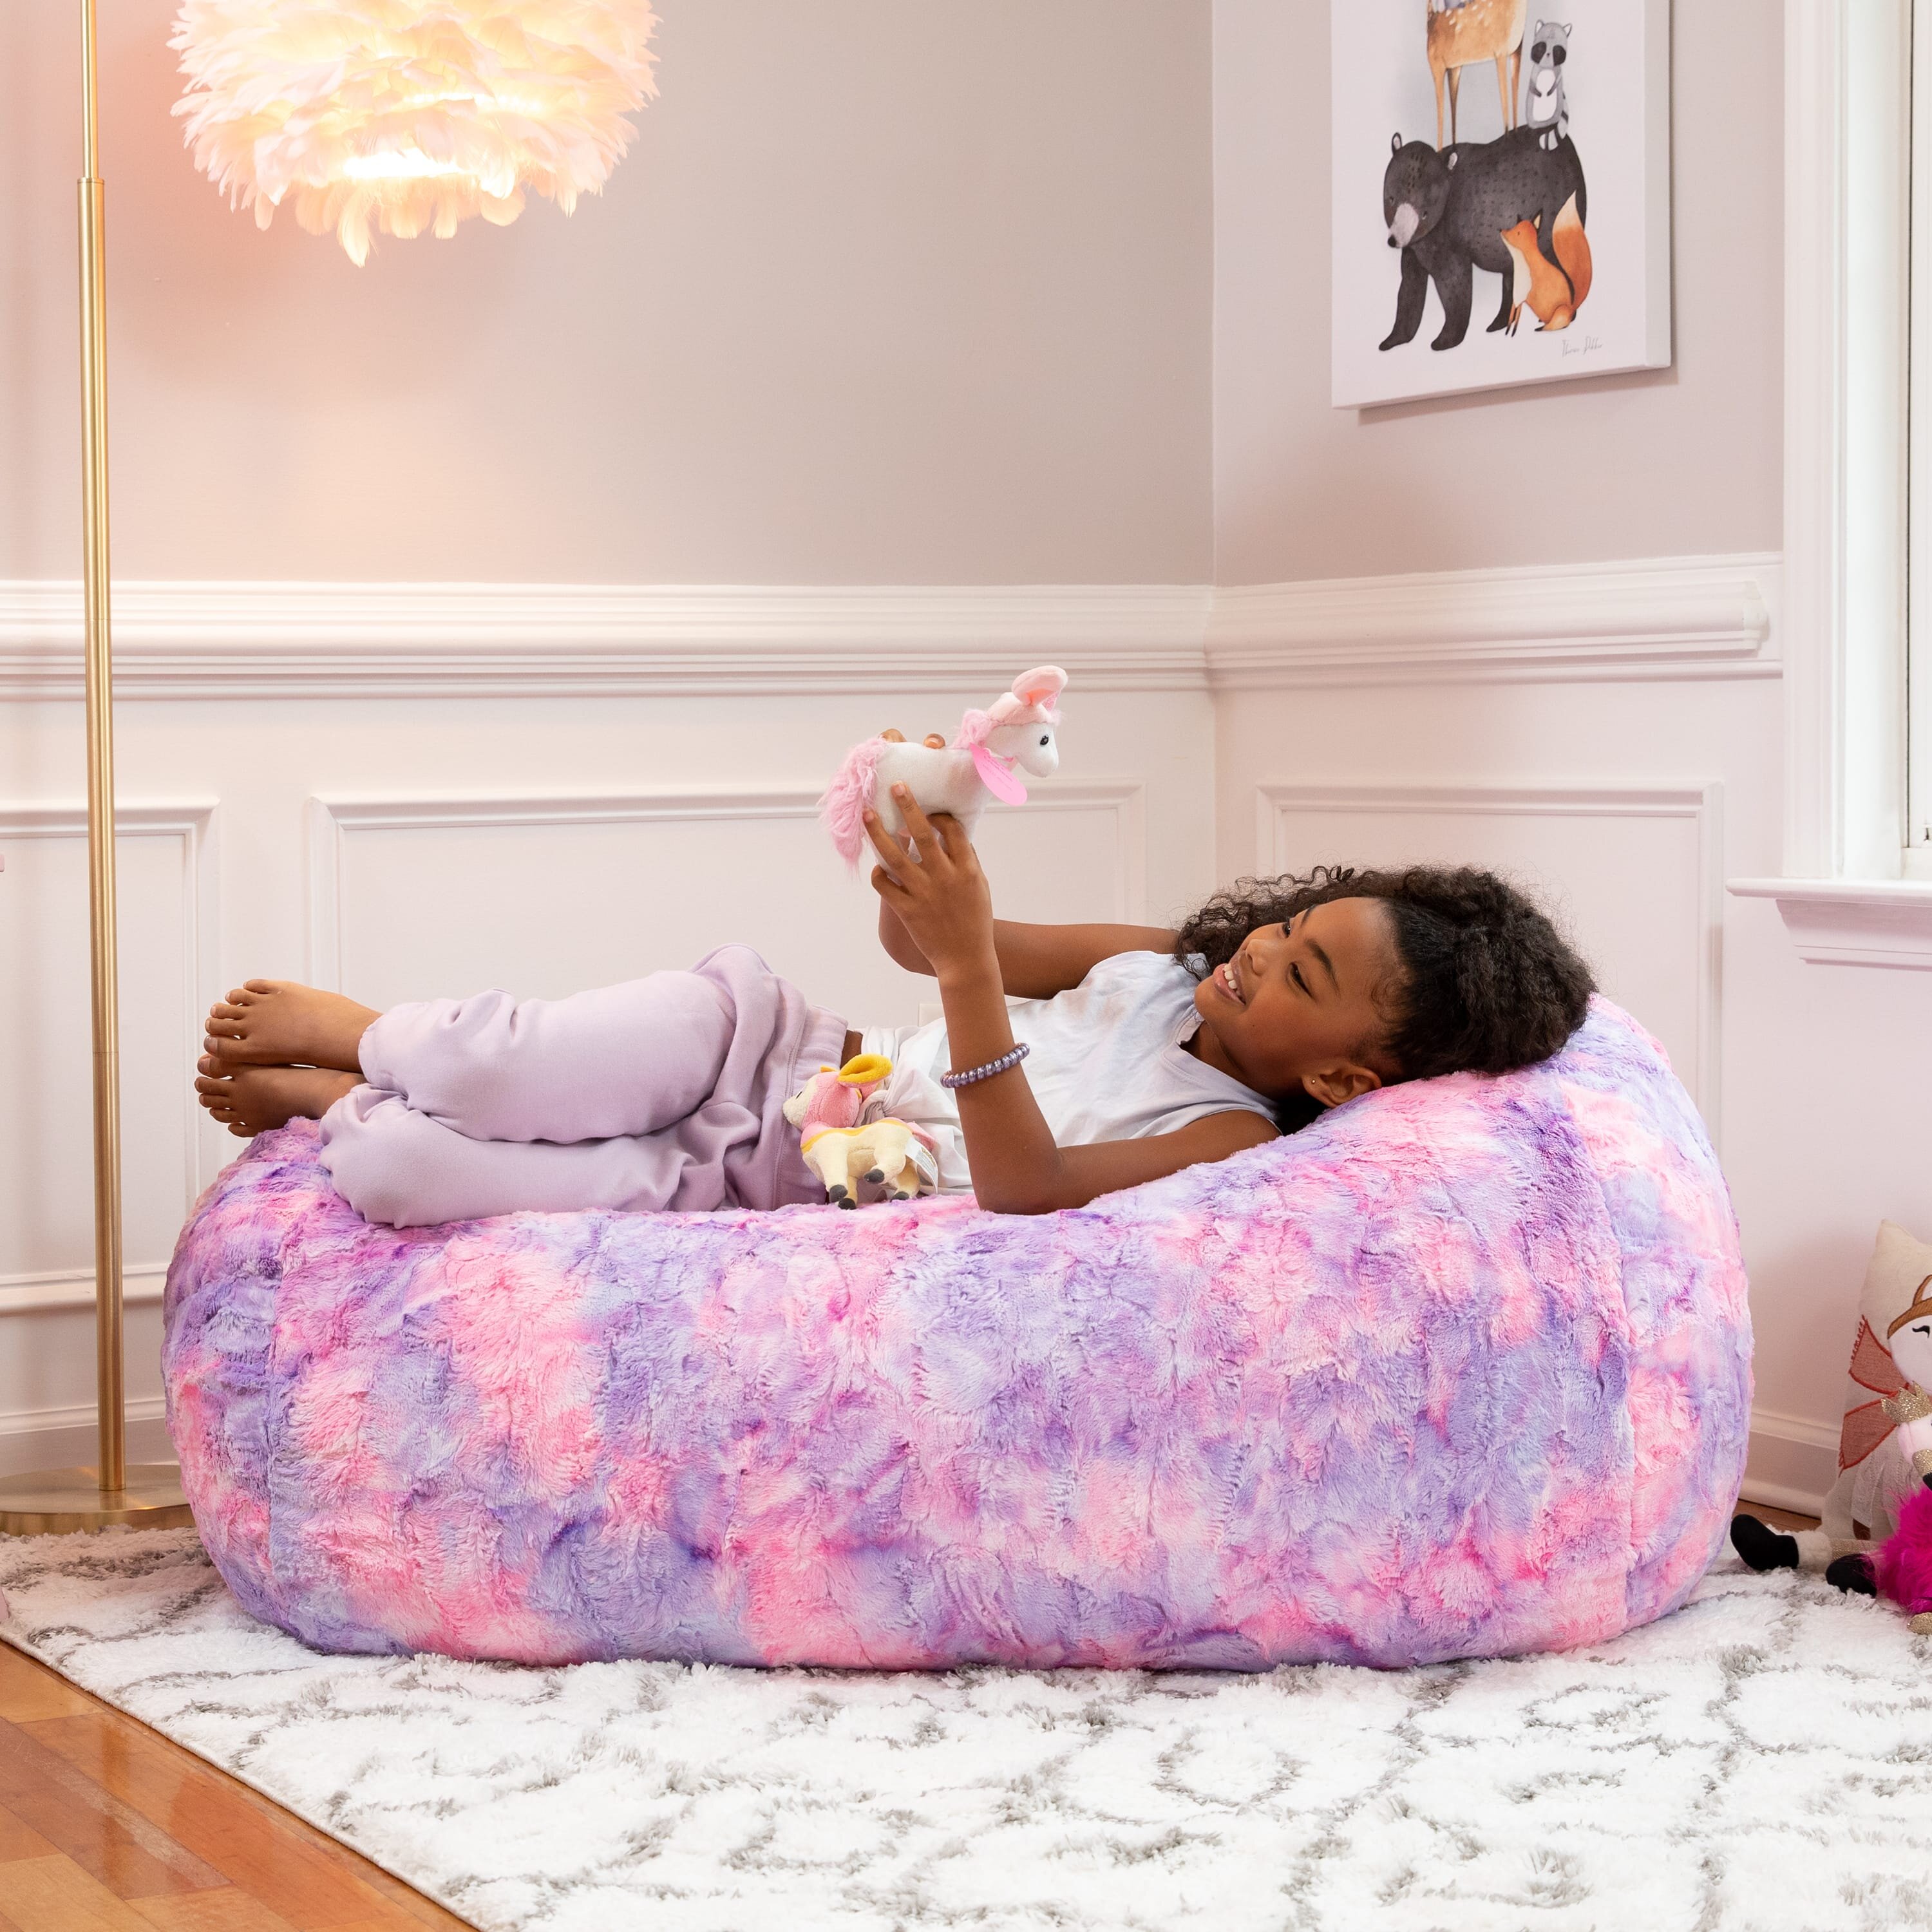 Jaxx Sofa Saxx Bean Bag Couch - 4 Foot - Faux Fur, Unicorn Pink